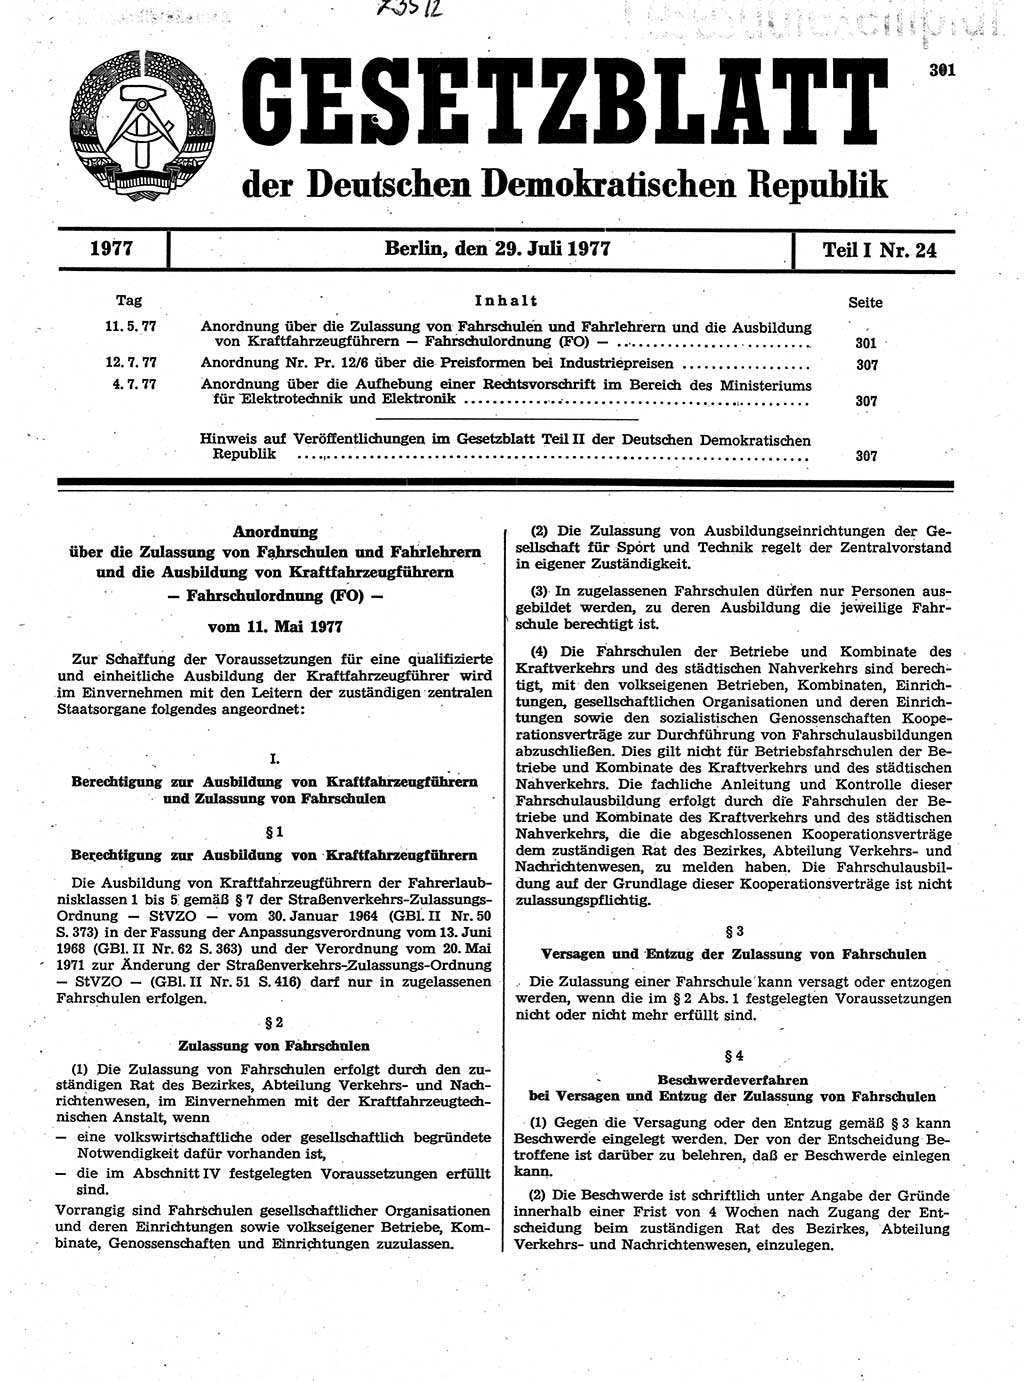 Gesetzblatt (GBl.) der Deutschen Demokratischen Republik (DDR) Teil Ⅰ 1977, Seite 301 (GBl. DDR Ⅰ 1977, S. 301)